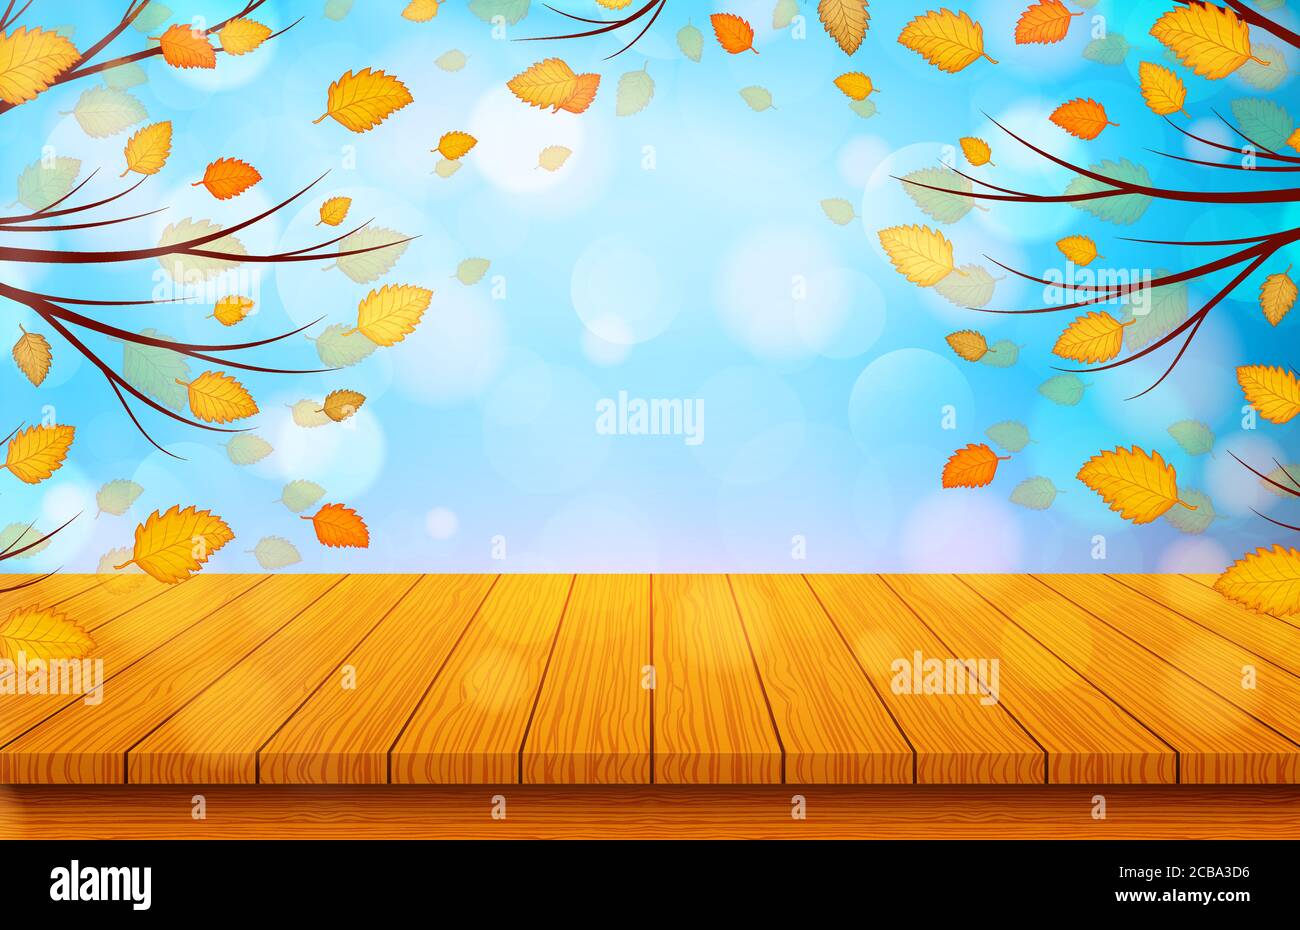 Holztisch mit orangefarbenen Blättern. Herbst Natur Hintergrund. Vektorgrafik Stock Vektor